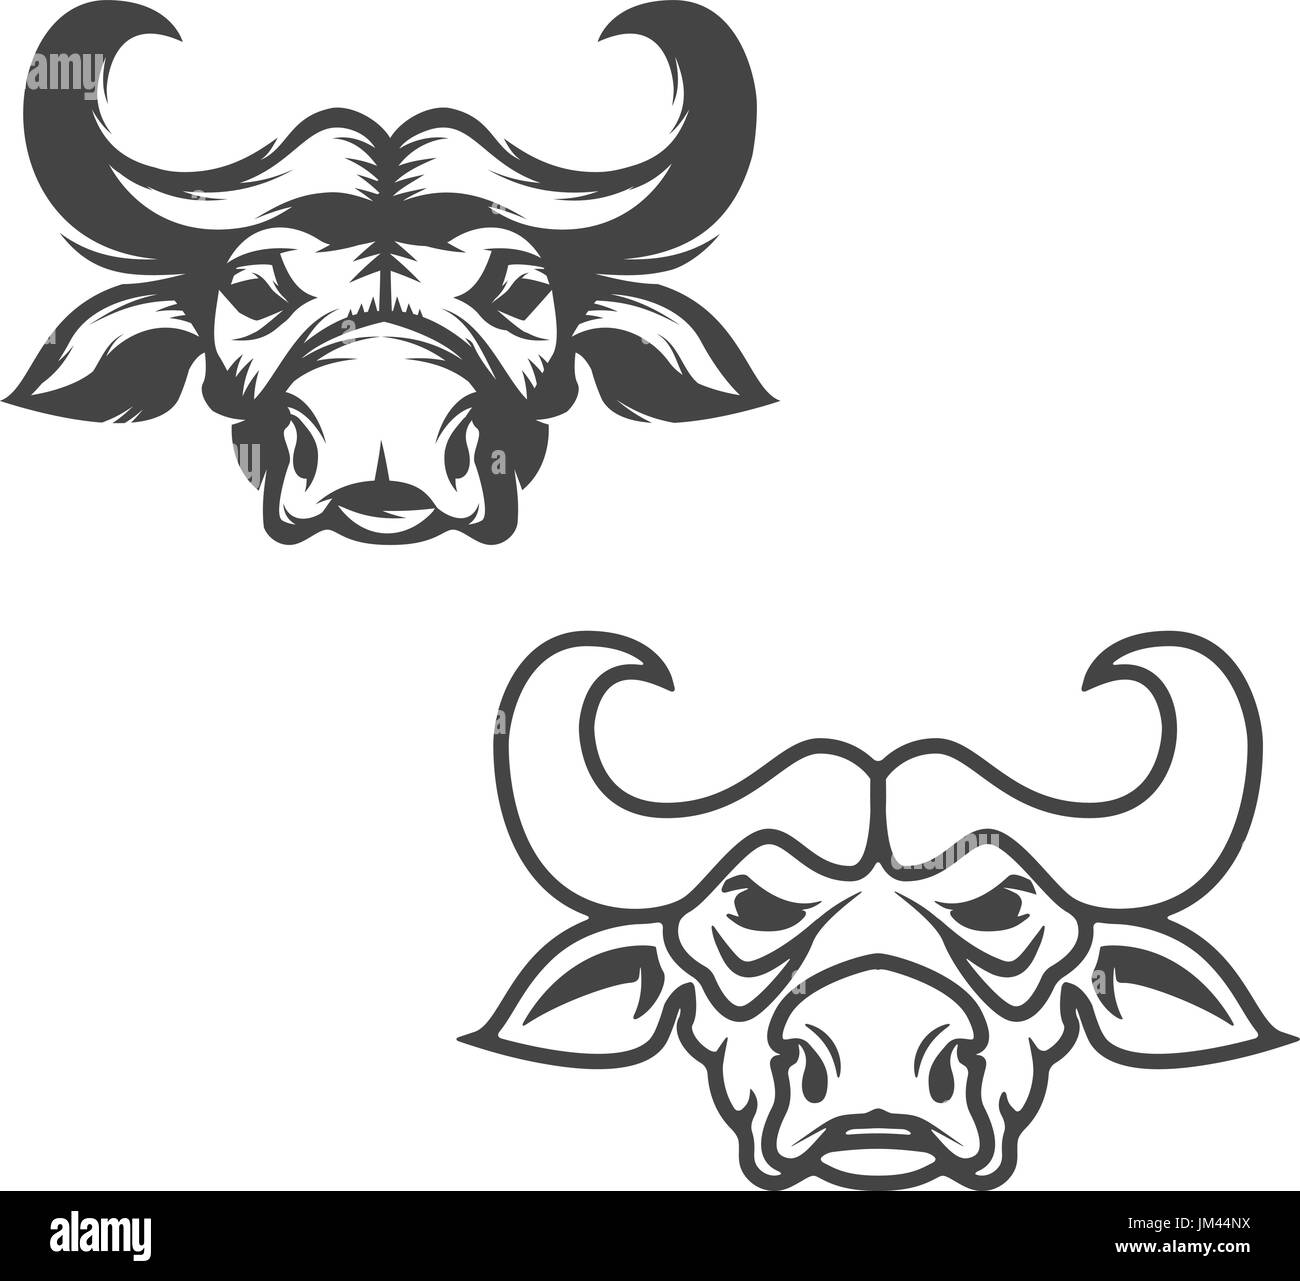 Ensemble de têtes de bison isolé sur fond blanc. Éléments de conception pour le label, logo, emblème, signe, marque de marque. Vector illustration. Illustration de Vecteur